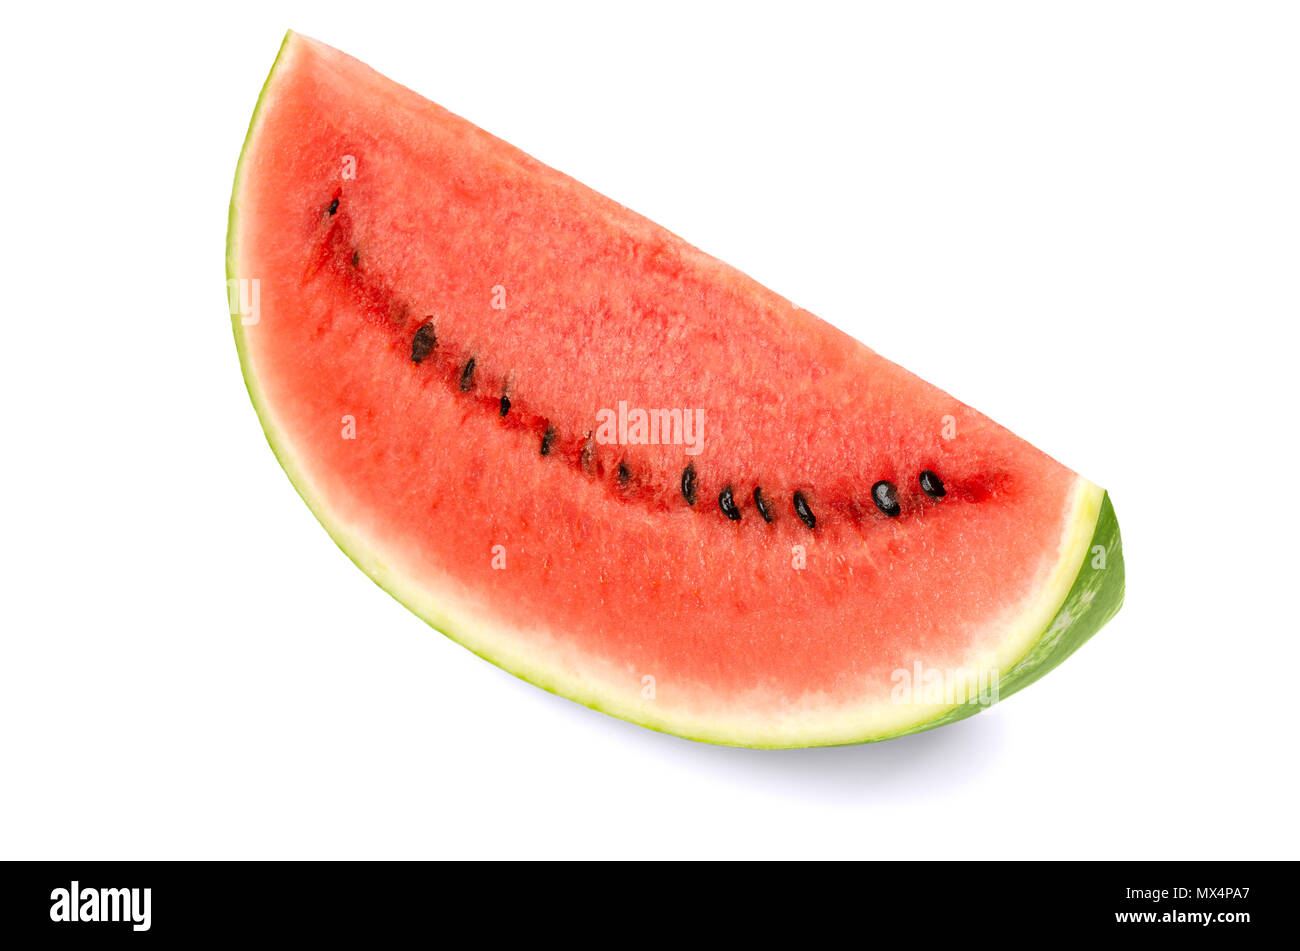 Süße Wassermelonen Slice, Vorderansicht, auf weißem Hintergrund. Große reife Frucht der Citrullus lanatus mit grün gestreifte Haut, rot Zellstoff- und schwarzen Samen. Stockfoto